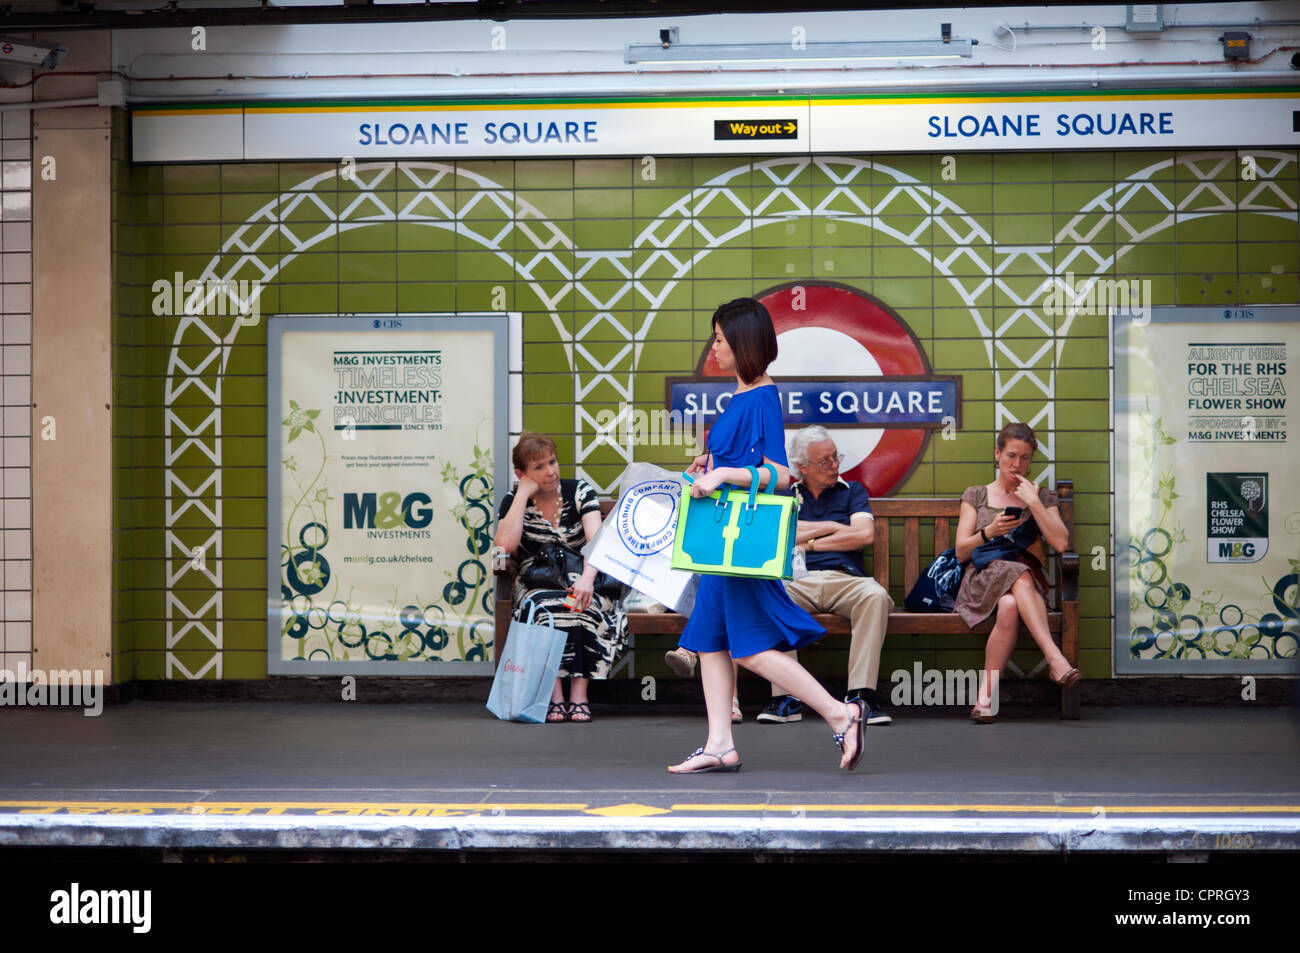 London, England, UK. Sloane Square Underground Station with people waiting for tube train. May 2012. Stock Photo